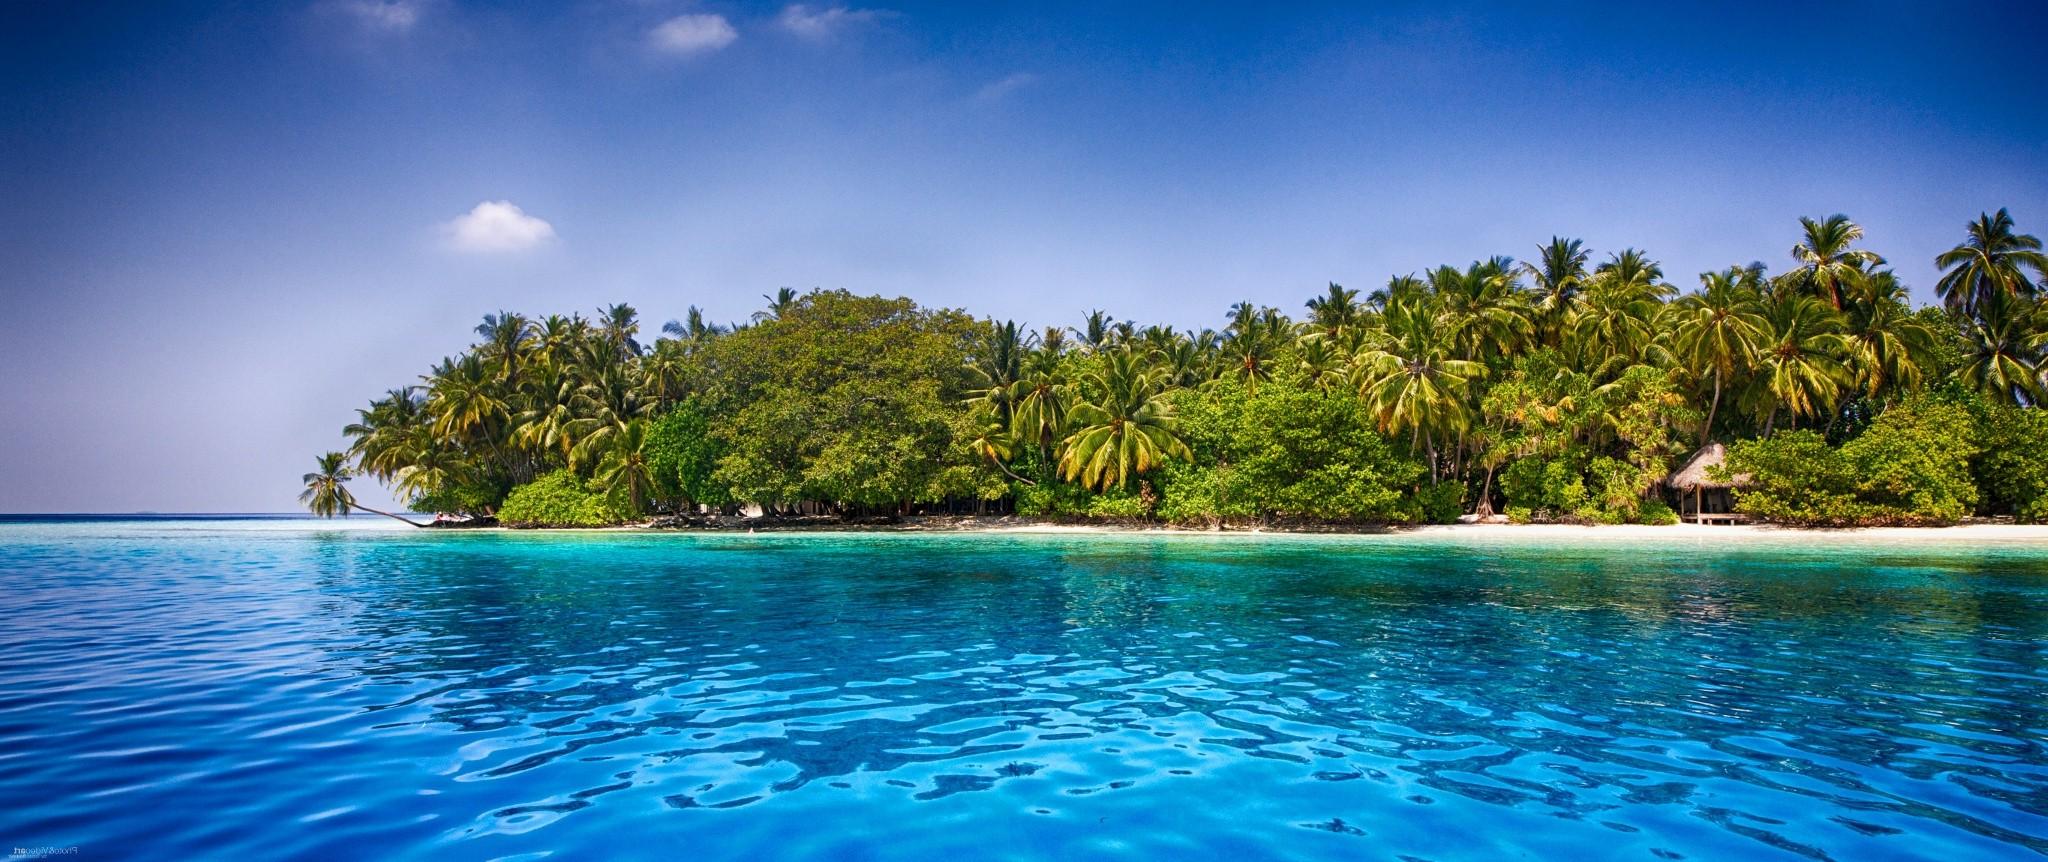 Maldives Beach Palm Trees Tropical Sea Sand Water Summer